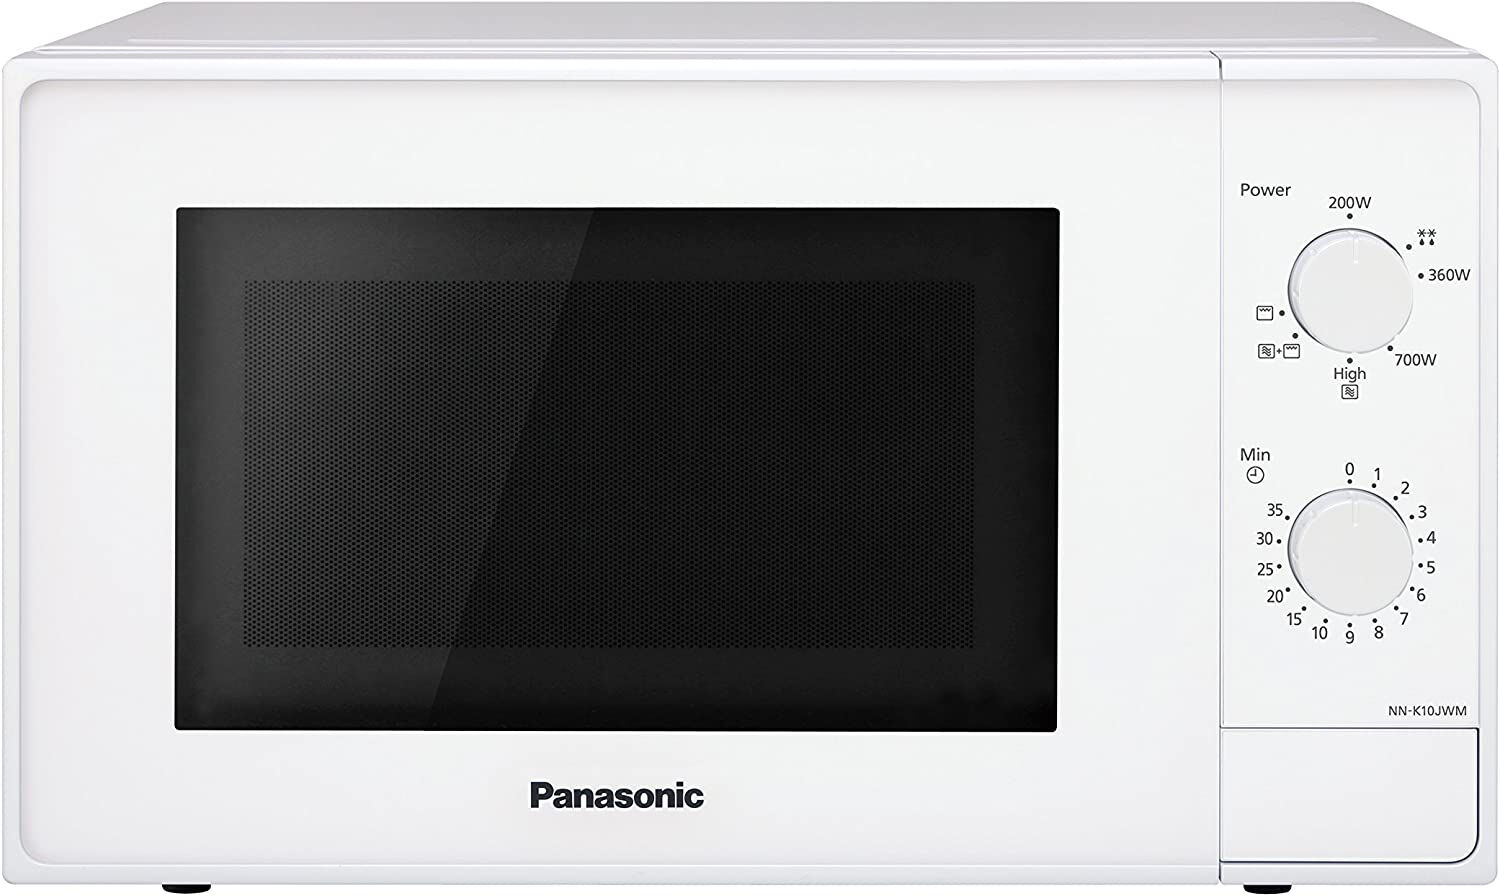 Panasonic Nn-K10jwmepg Nn-K10jwmepg Forno A Microonde Combinato Con Grill Al Quarzo 20 Litri 800 Watt Colore Bianco